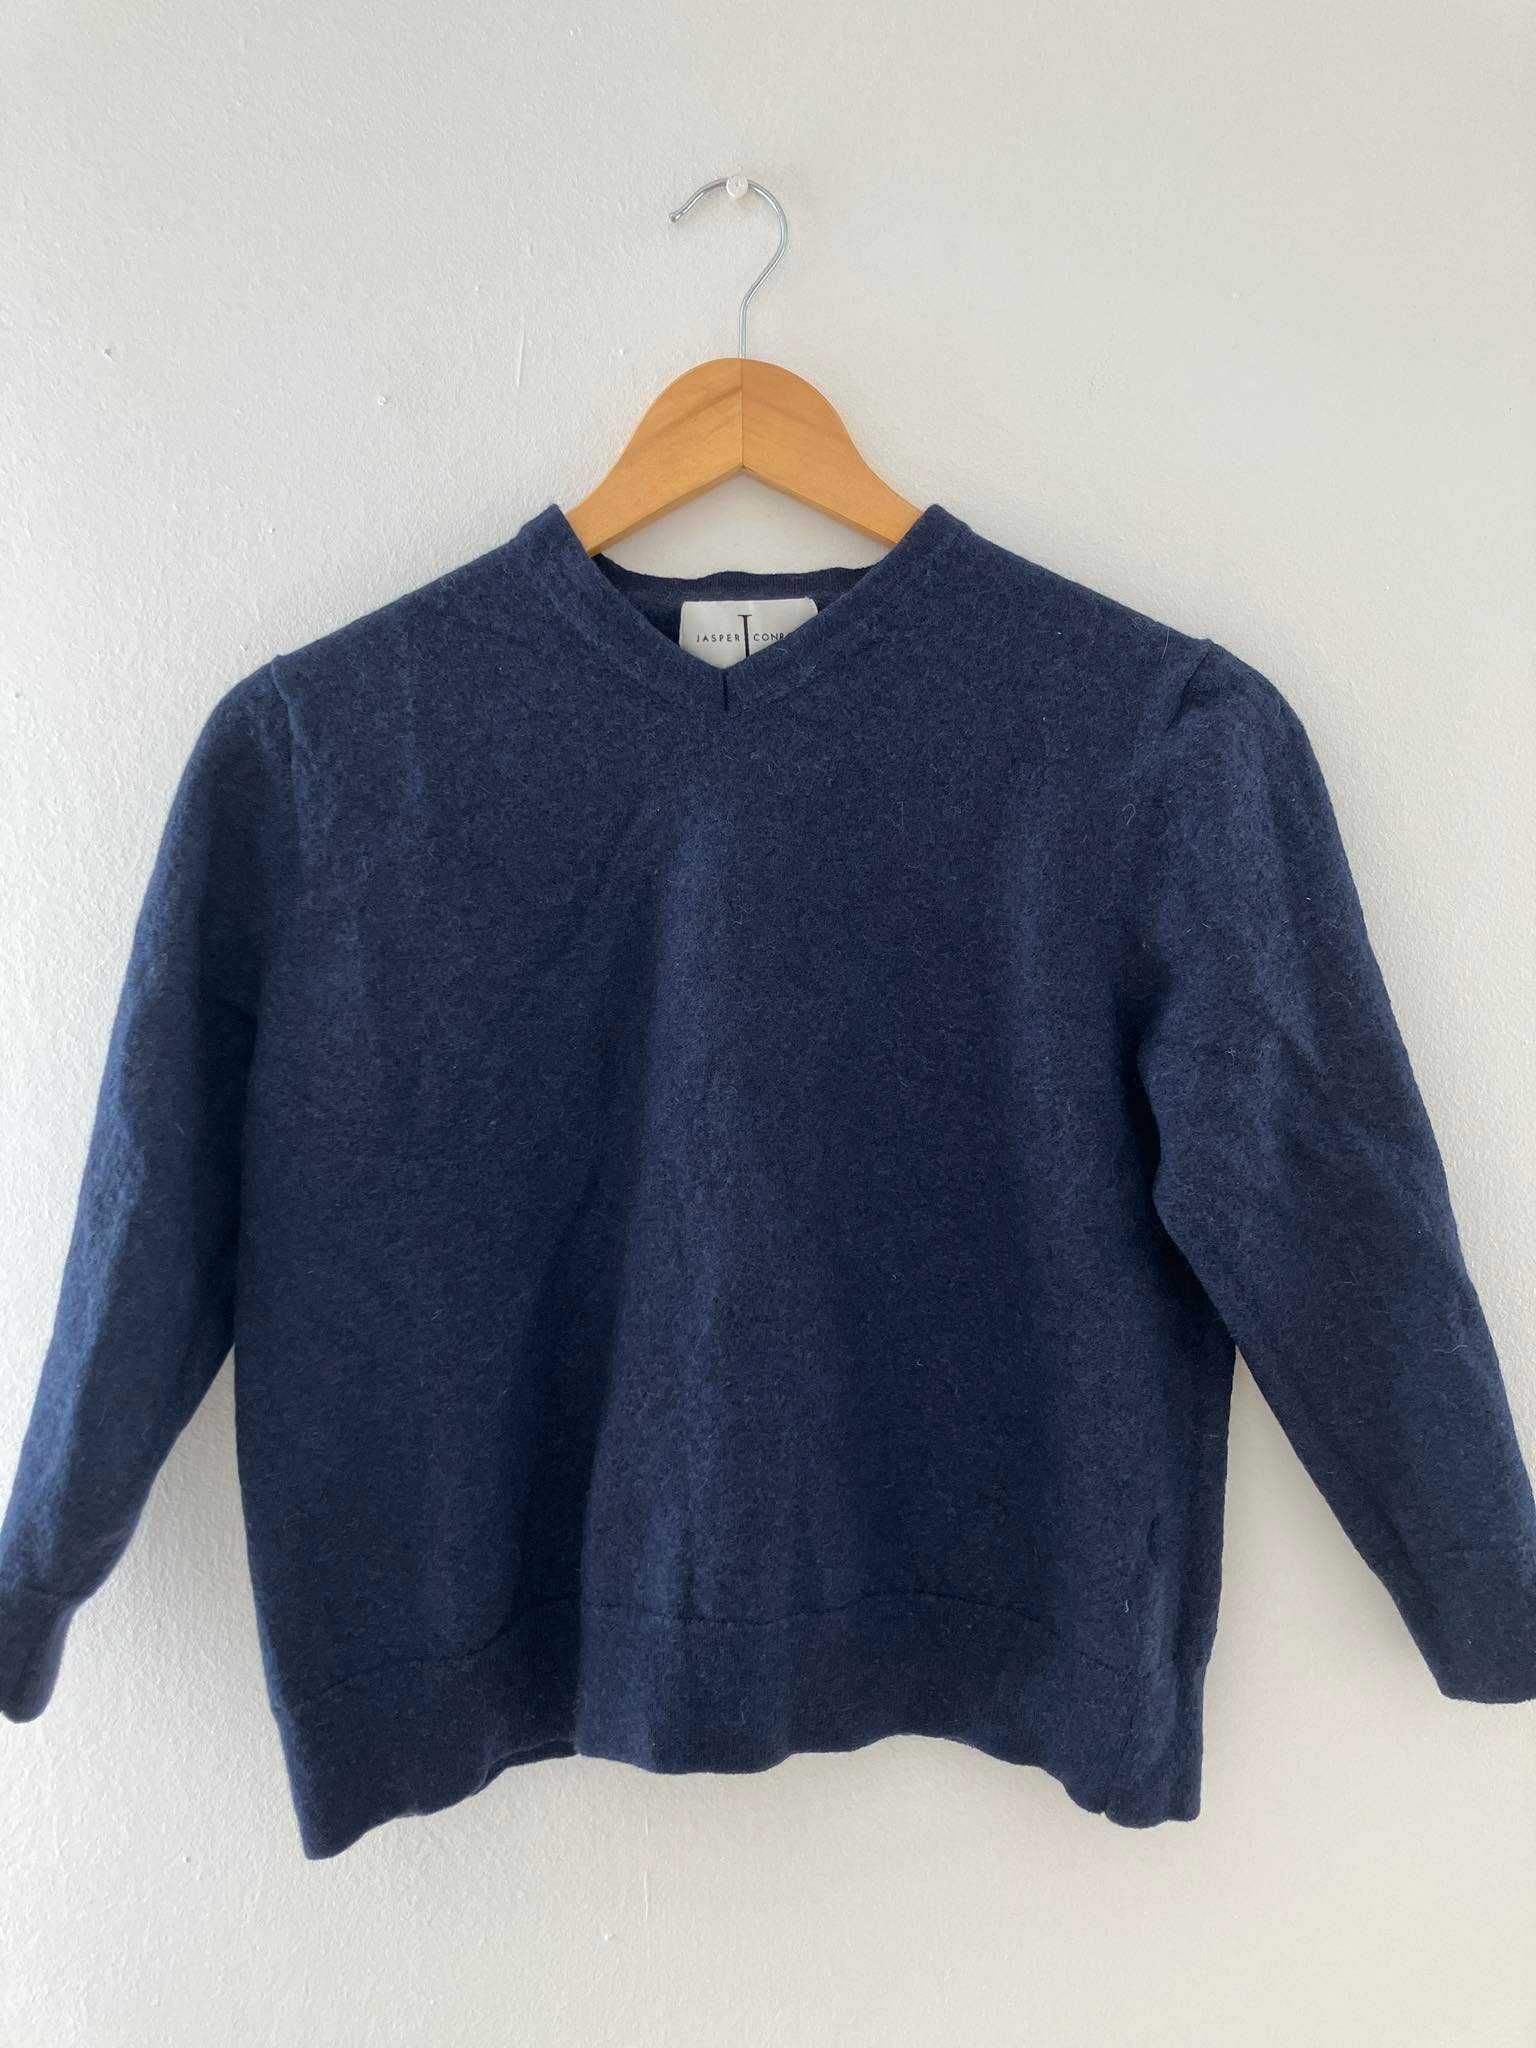 Granatowy sweter Jasper Conram 100% wełna merino